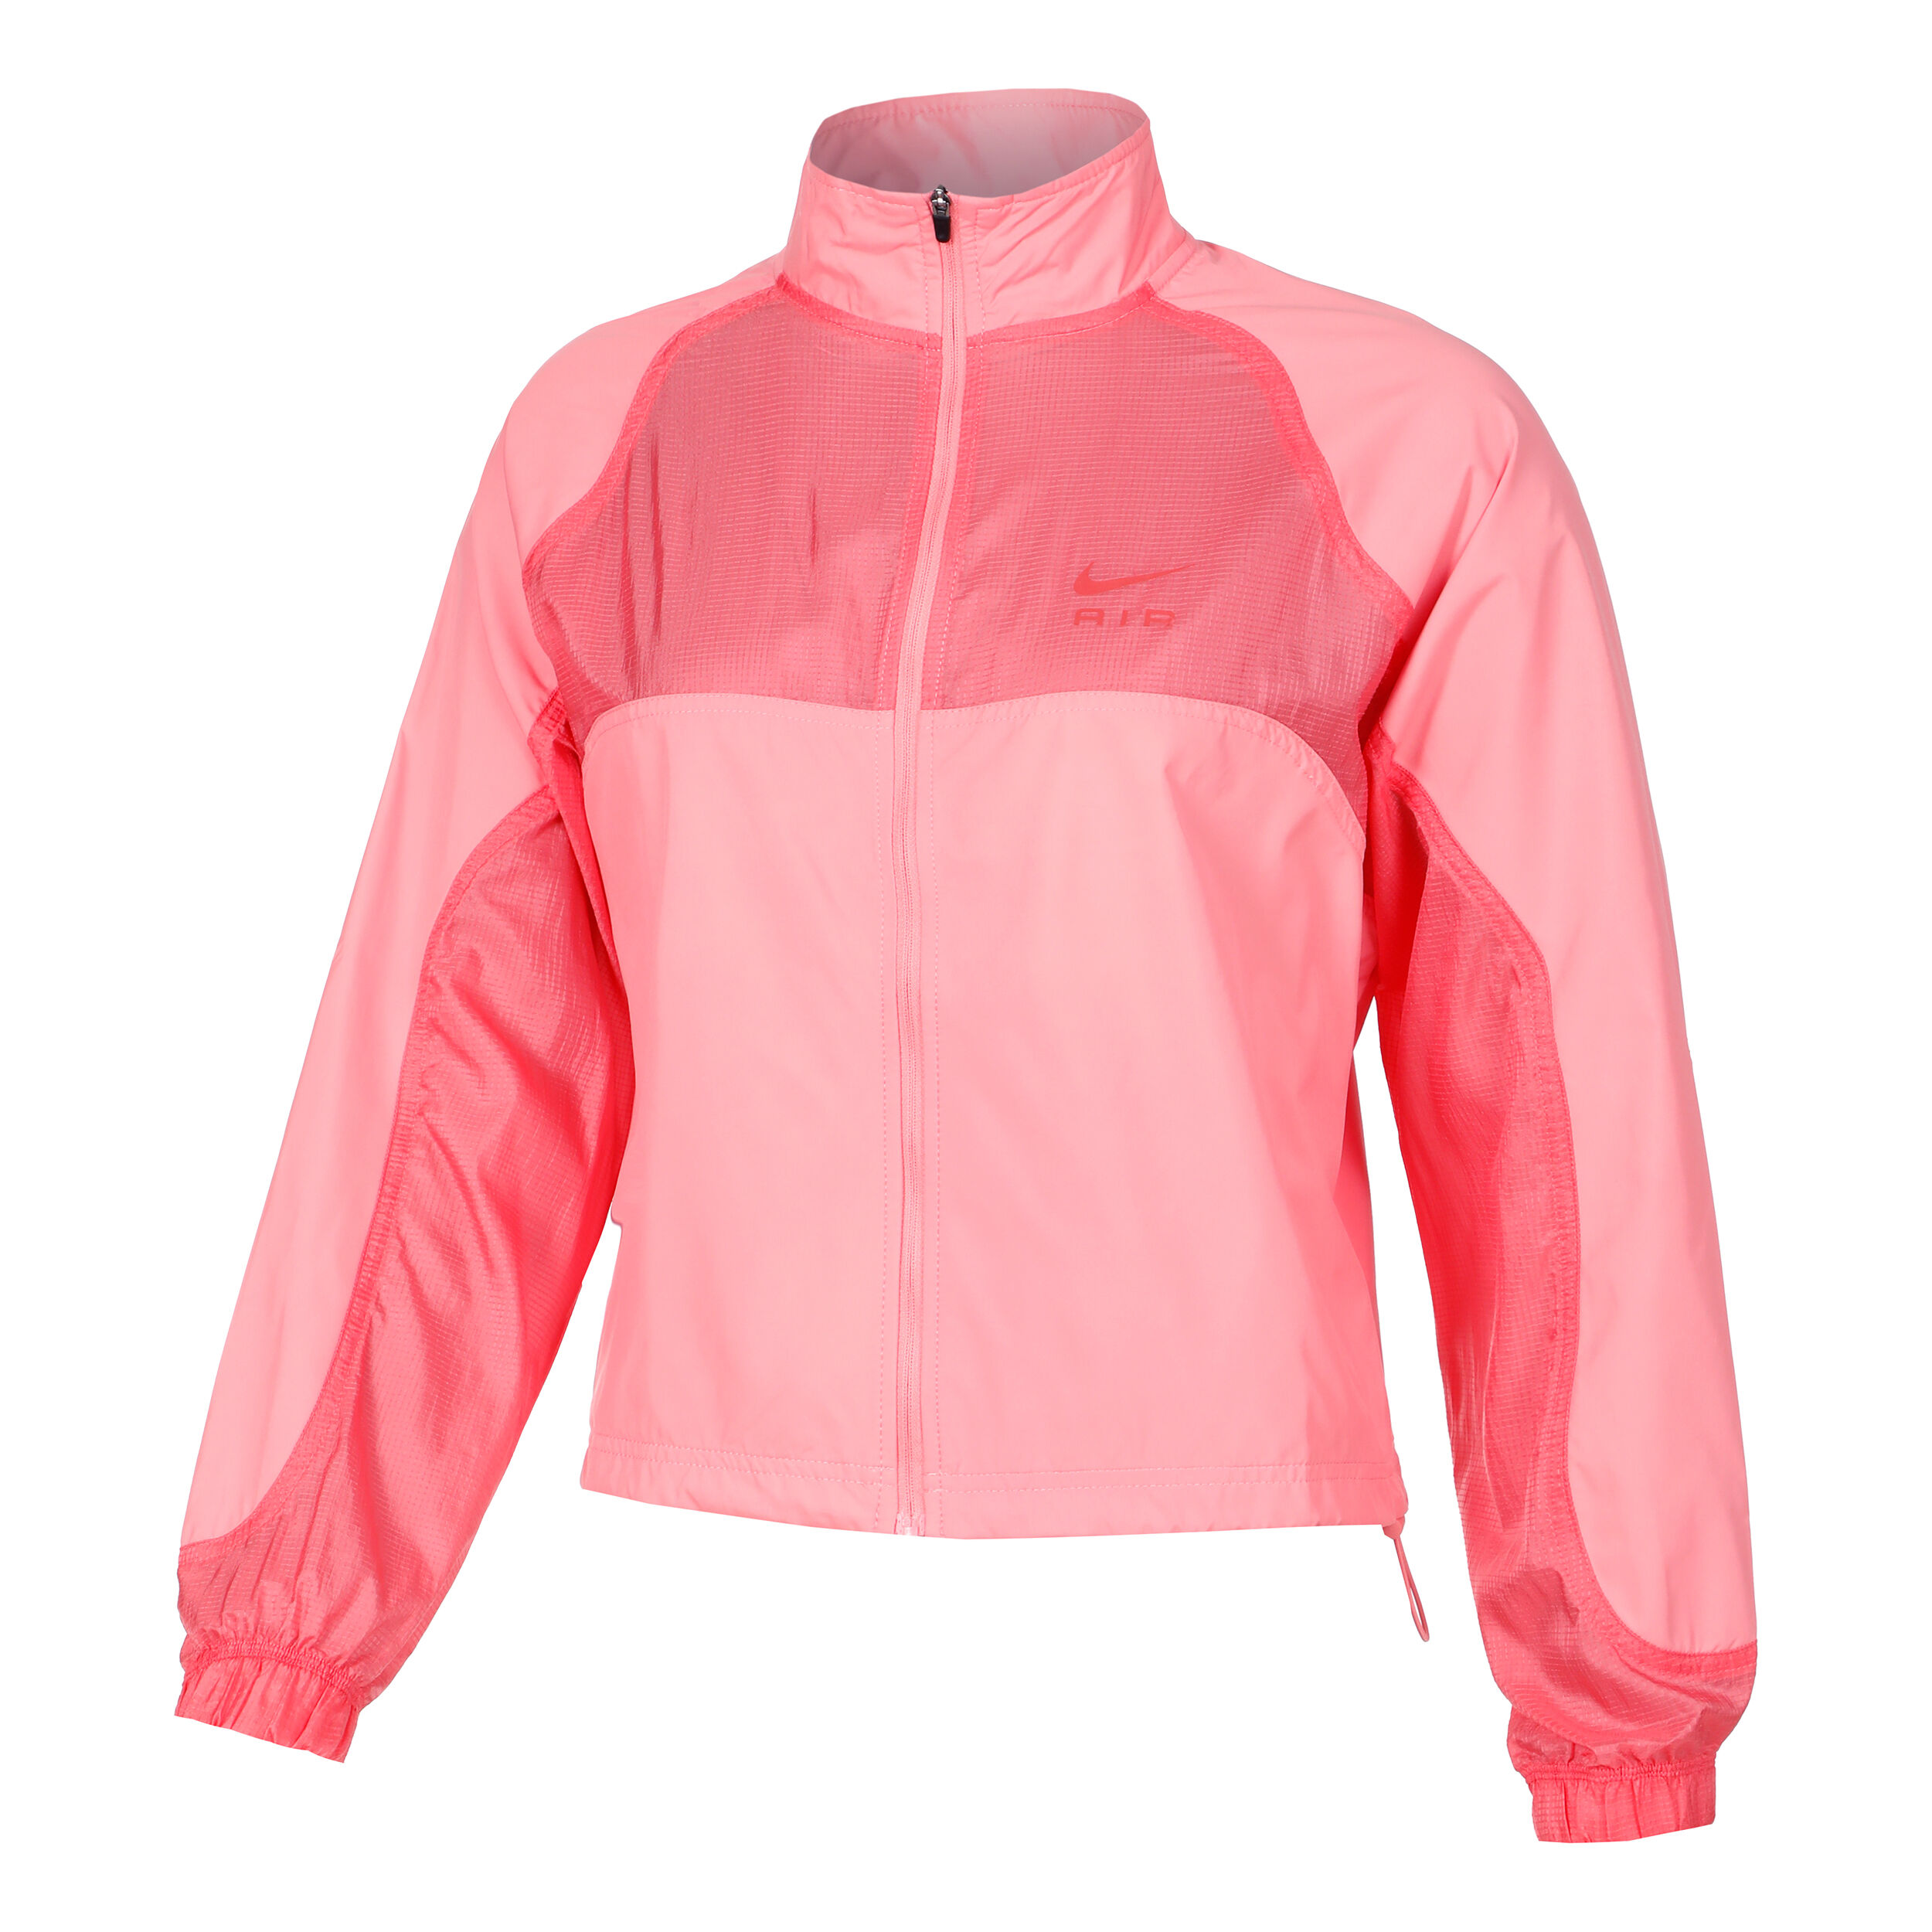 Nike Dri-Fit Jacket Womens Size Medium Blue Zip Up Athletic | eBay